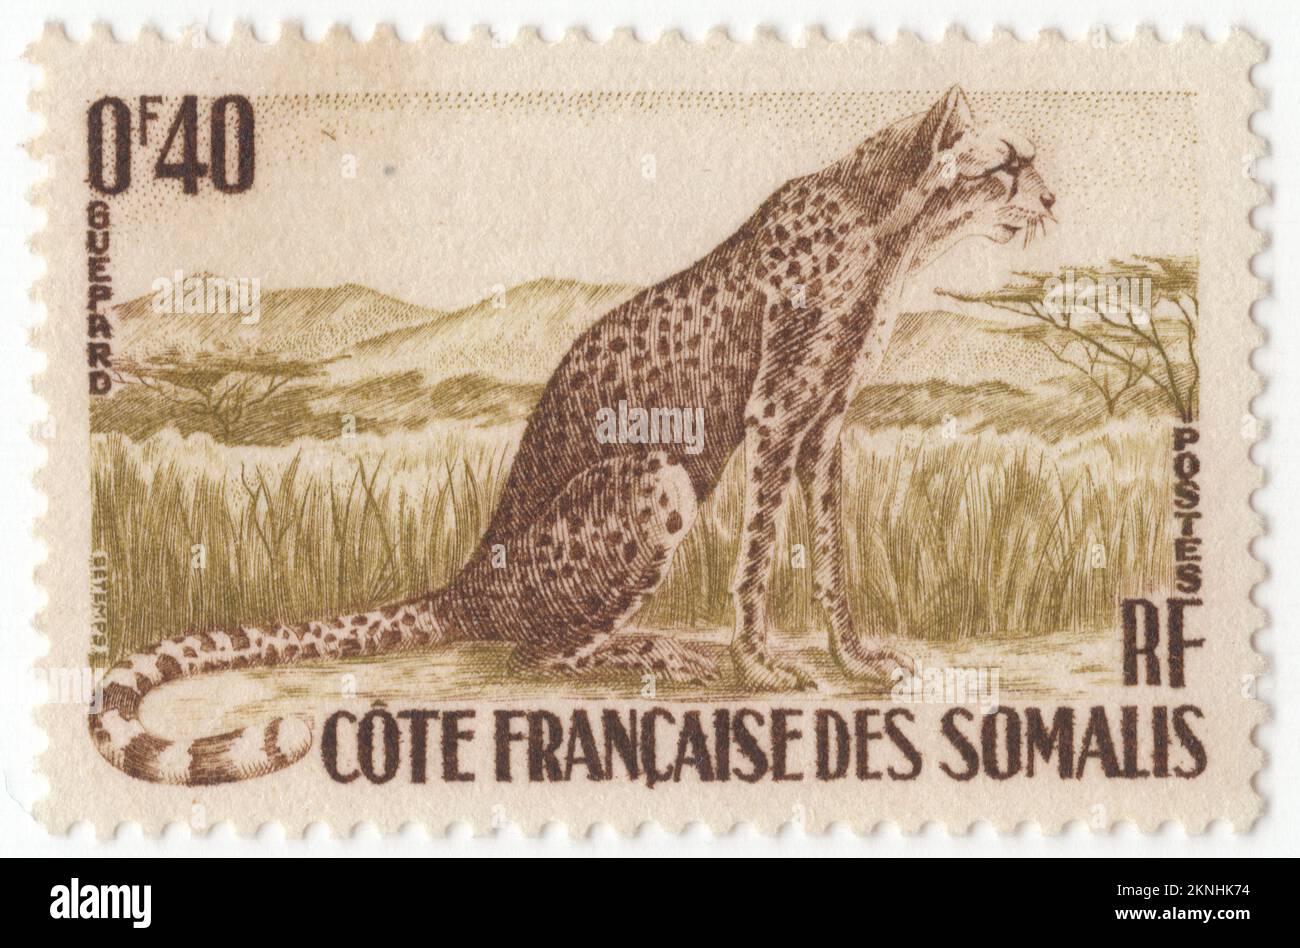 DSCHIBUTI AN DER KÜSTE FRANKREICHS SOMALIAS - 1958: Eine Briefmarke mit brauner und olivgrüner Briefmarke von 40 Centimes, die den Geparden darstellt. Der Gepard (Acinonyx jubatus) ist eine große Katze, die in Afrika und im zentralen Iran heimisch ist. Es handelt sich um das schnellste Landtier, das schätzungsweise mit einer Geschwindigkeit von 80 bis 128 km/h (50 bis 80 mph) fahren kann, wobei die schnellste, zuverlässig aufgezeichnete Geschwindigkeit 93 und 98 km/h (58 und 61 mph) beträgt; Und so hat er spezielle Anpassungen für Geschwindigkeit entwickelt, einschließlich einer leichten Konstruktion, langen dünnen Beinen und einem langen Schwanz. Er erreicht in der Regel 67–94 cm (26–37 Zoll) an der Schulter, und die Kopf- und Körperlänge beträgt zwischen 1,1 und 1,5 m. Stockfoto